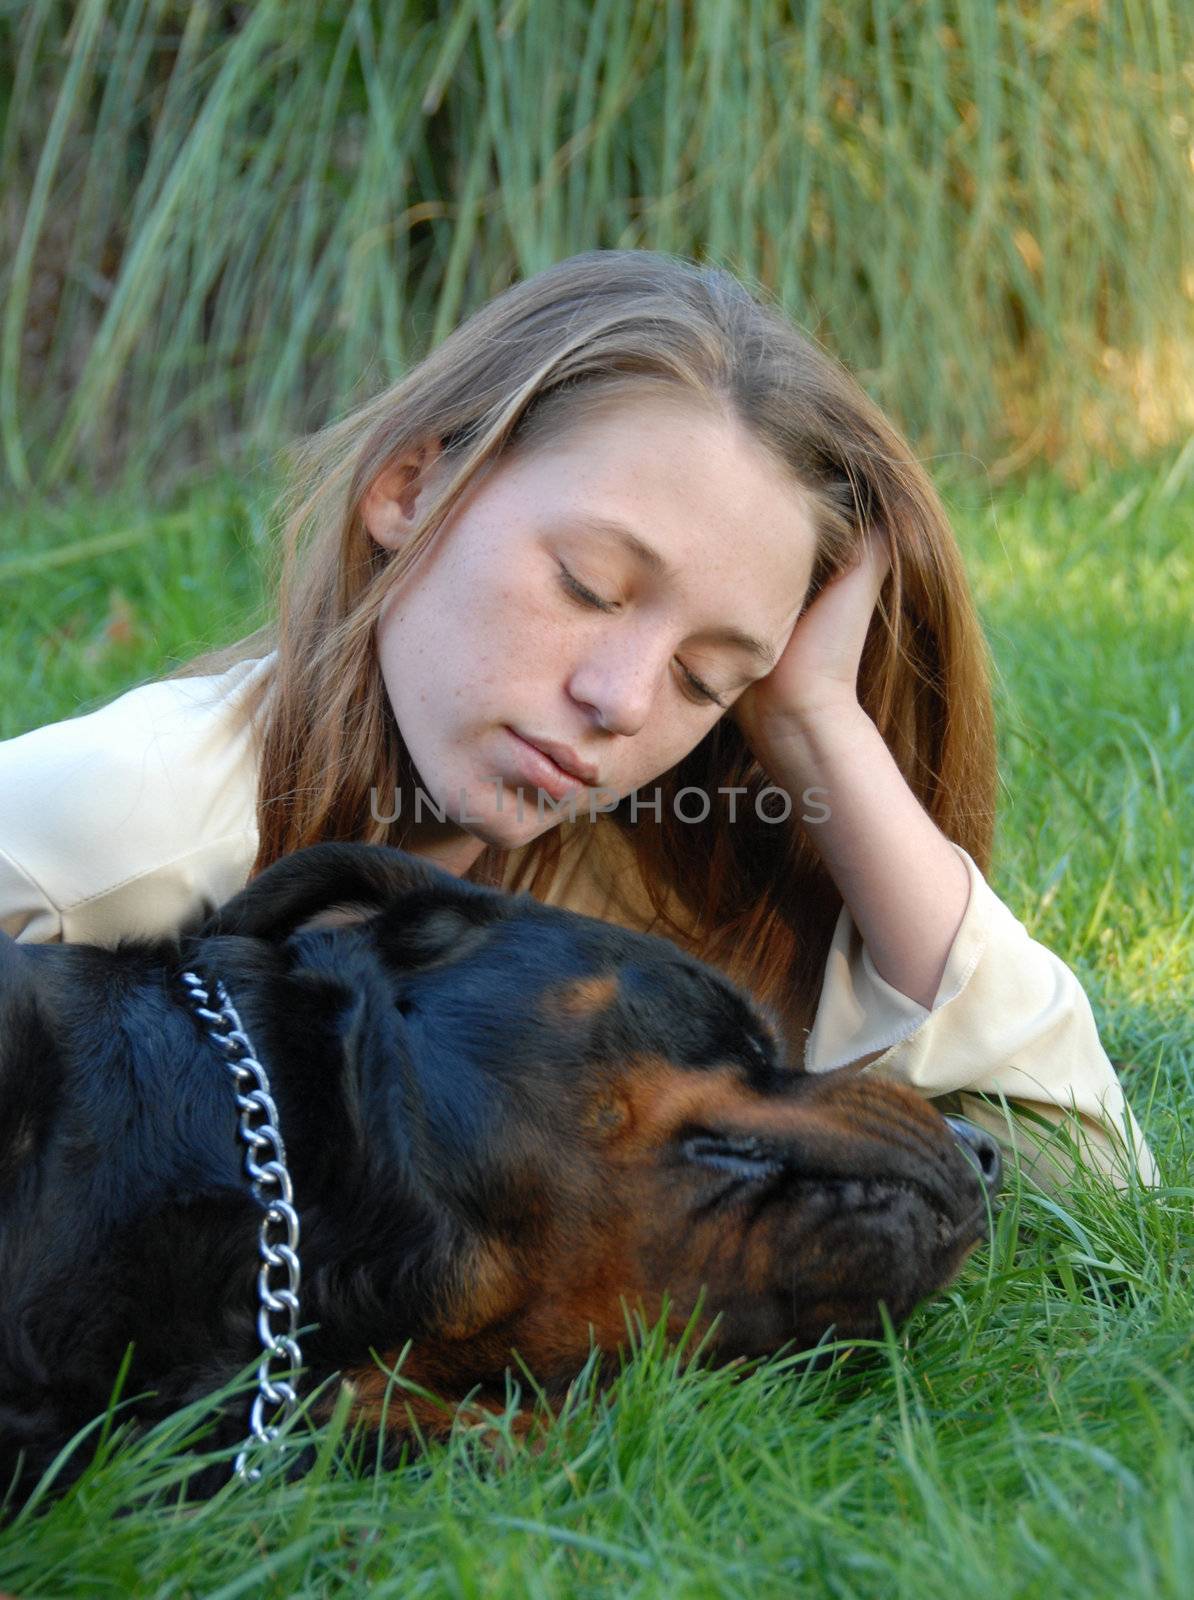 sleeping dog and woman by cynoclub